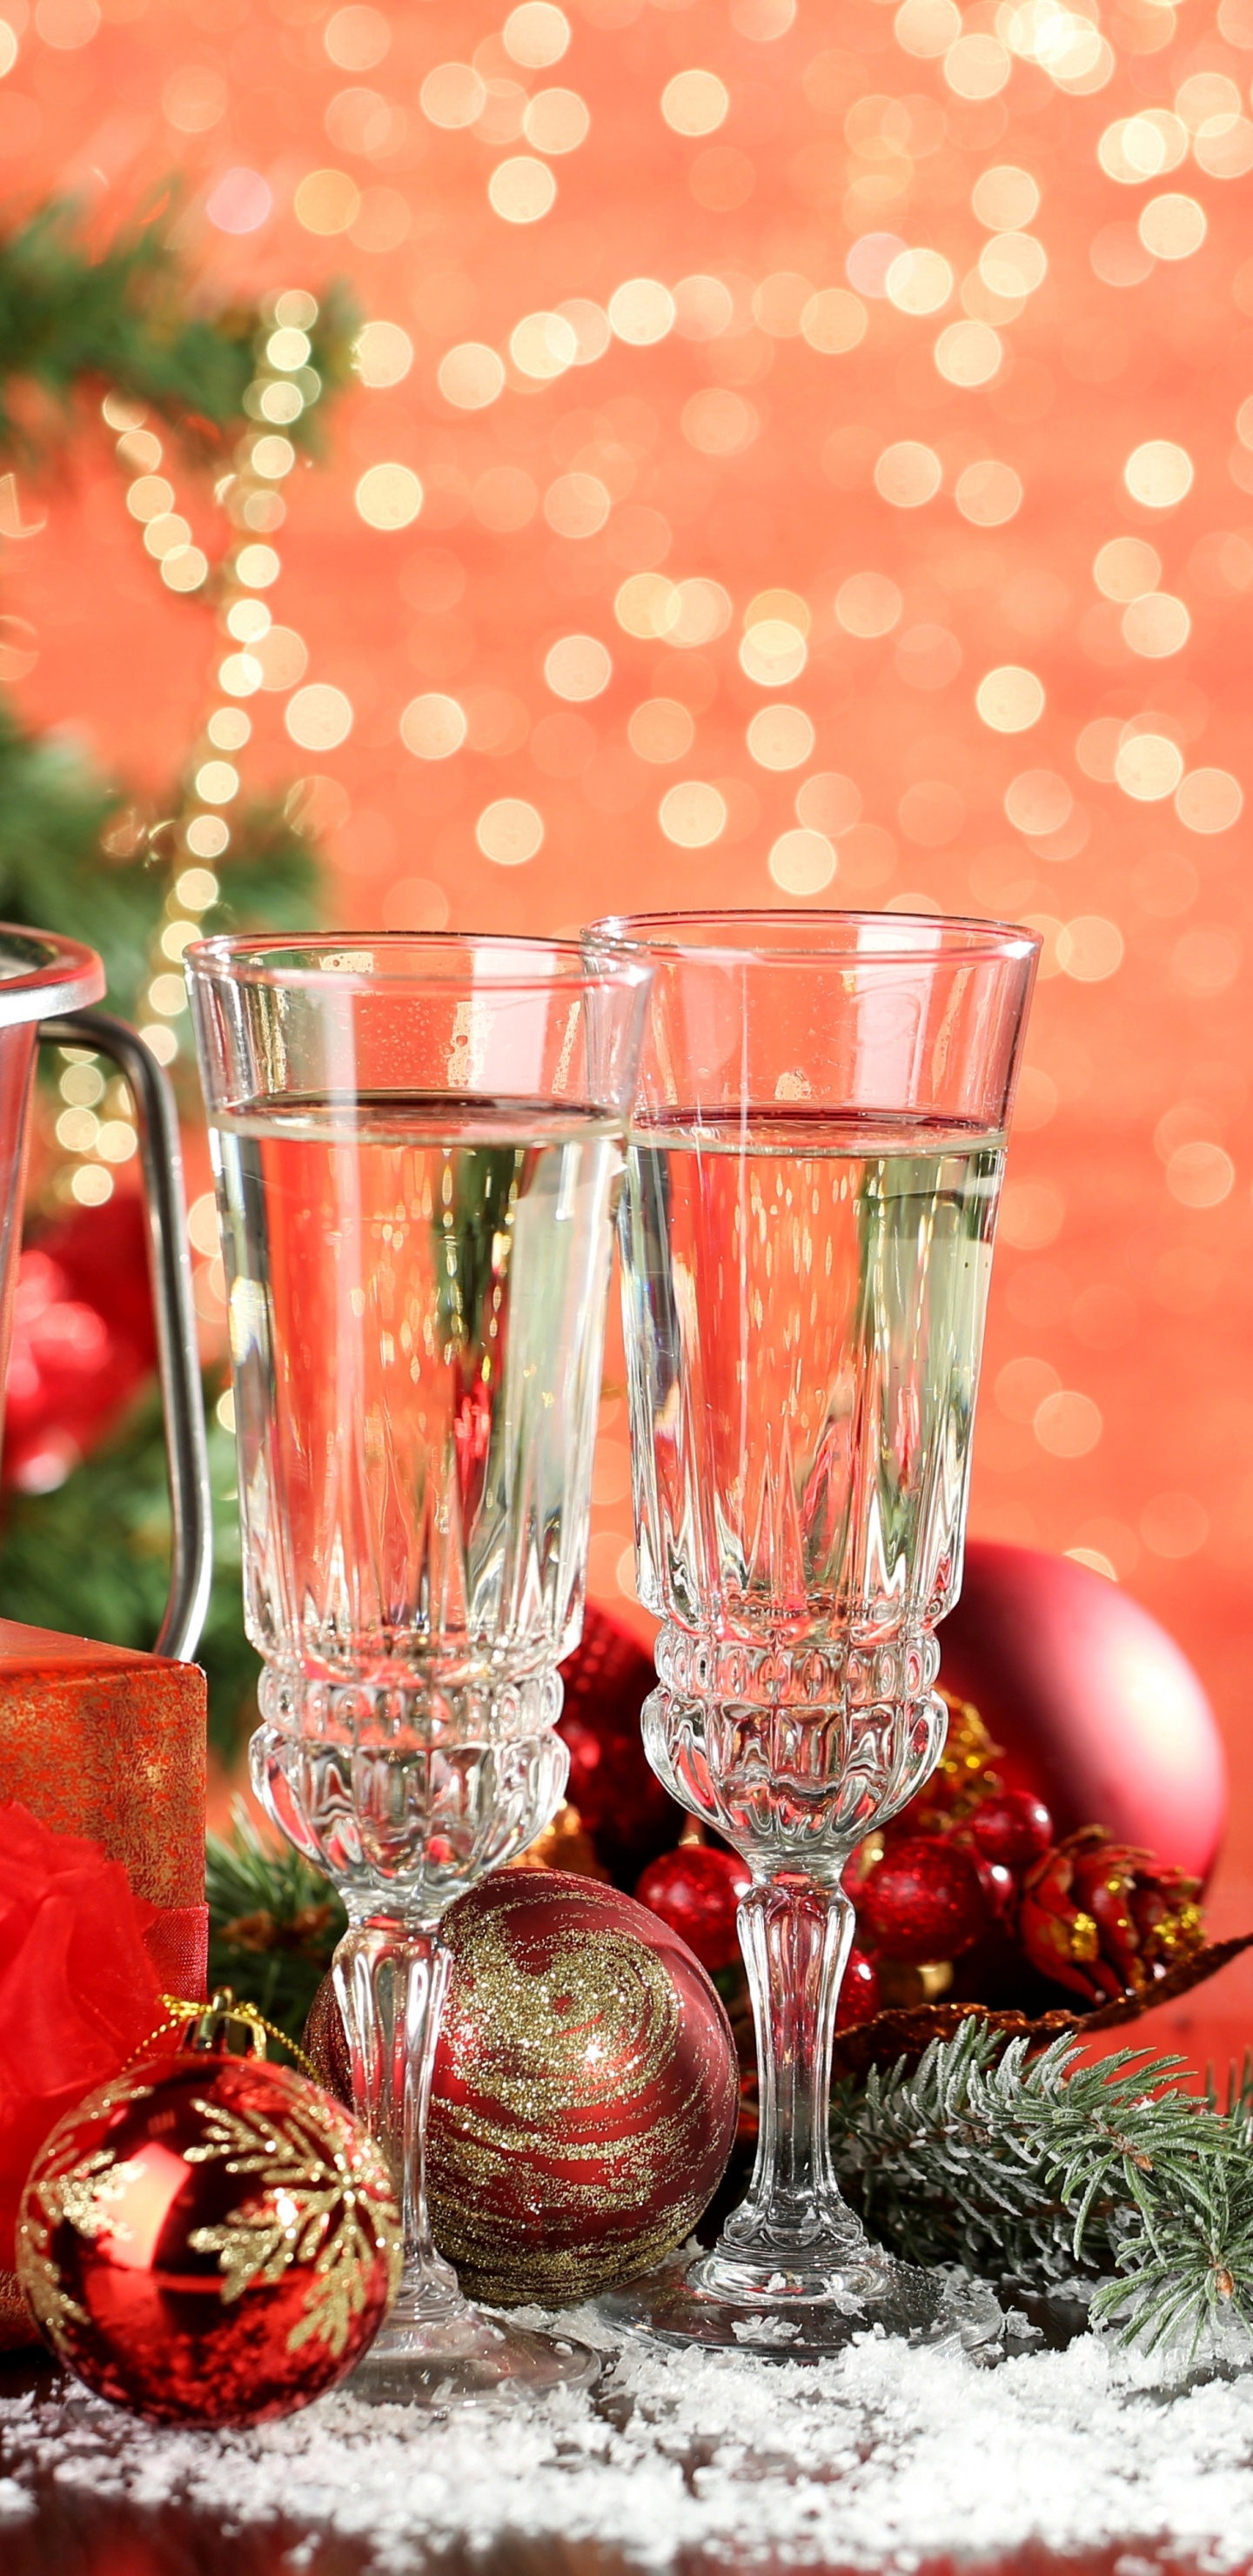 香槟, 新的一年, 圣诞节的装饰品, 圣诞装饰, 圣诞节 壁纸 1440x2960 允许